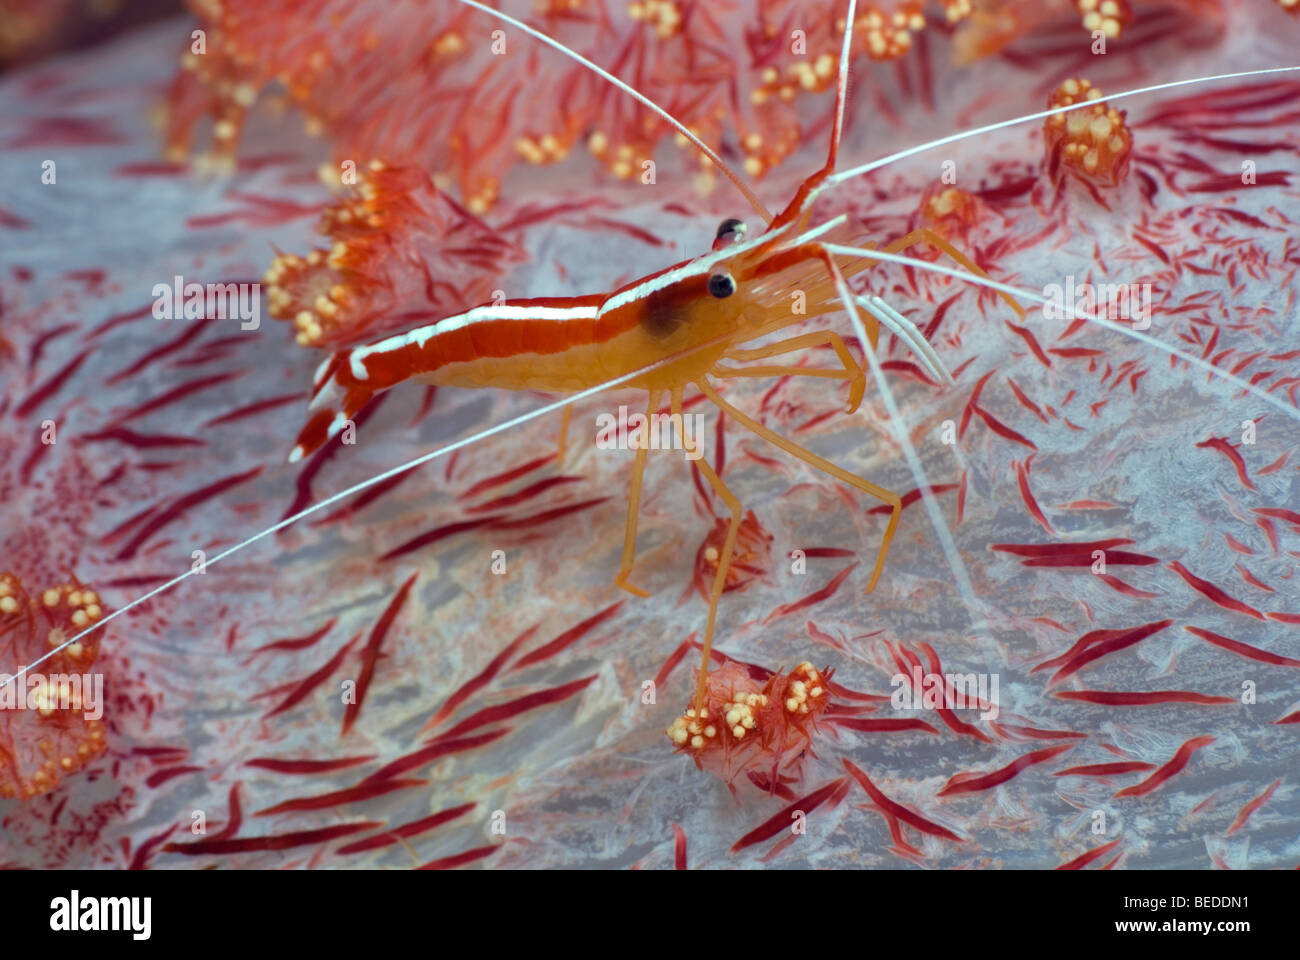 Ambon Putzergarnelen auf rote Weichkorallen unter Wasser. Stockfoto